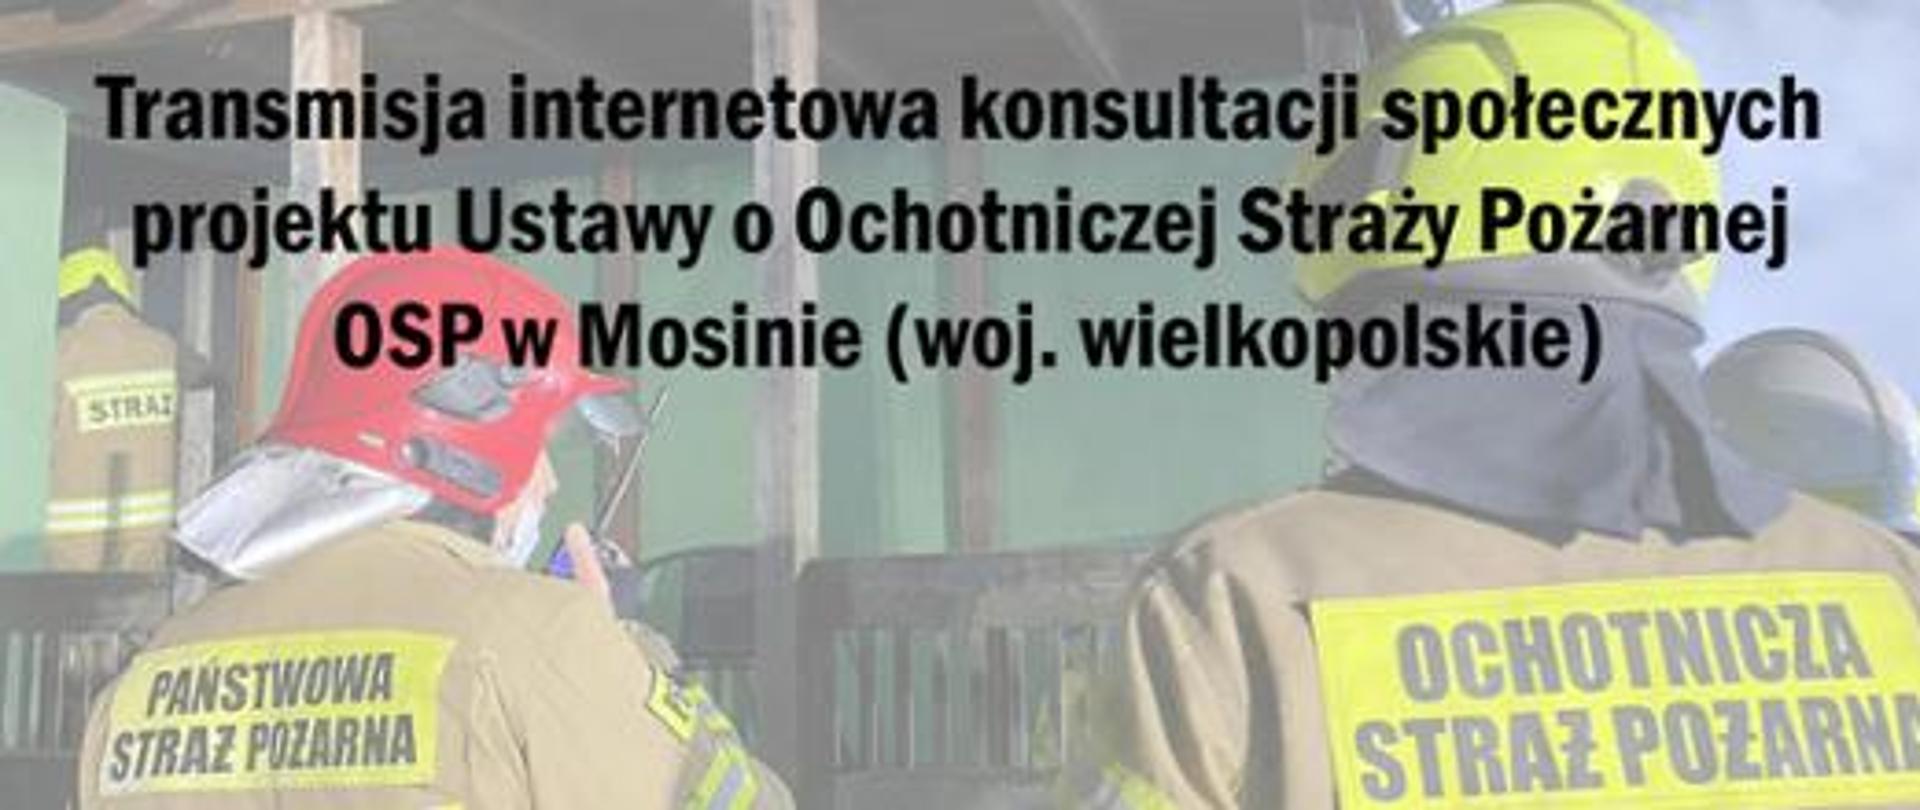 Napis na obrazku przedstawia: Transmisja online – konsultacje społeczne projektu Ustawy o Ochotniczej Straży Pożarnej w Mosinie (woj. wielkopolskie)